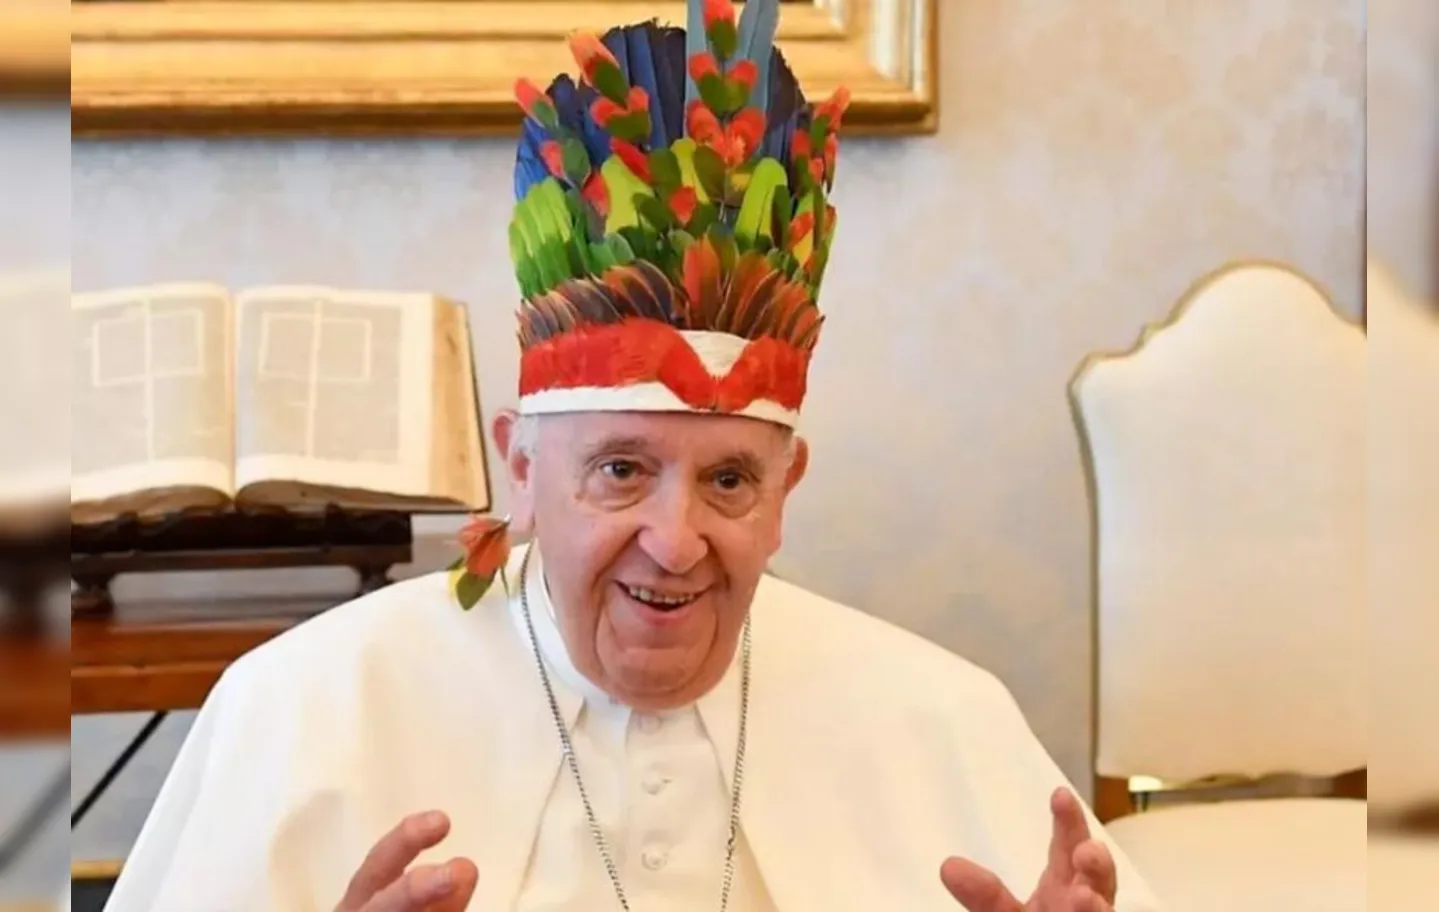 "Imagine se apareço na (praça) São Pedro assim?", brincou o Papa